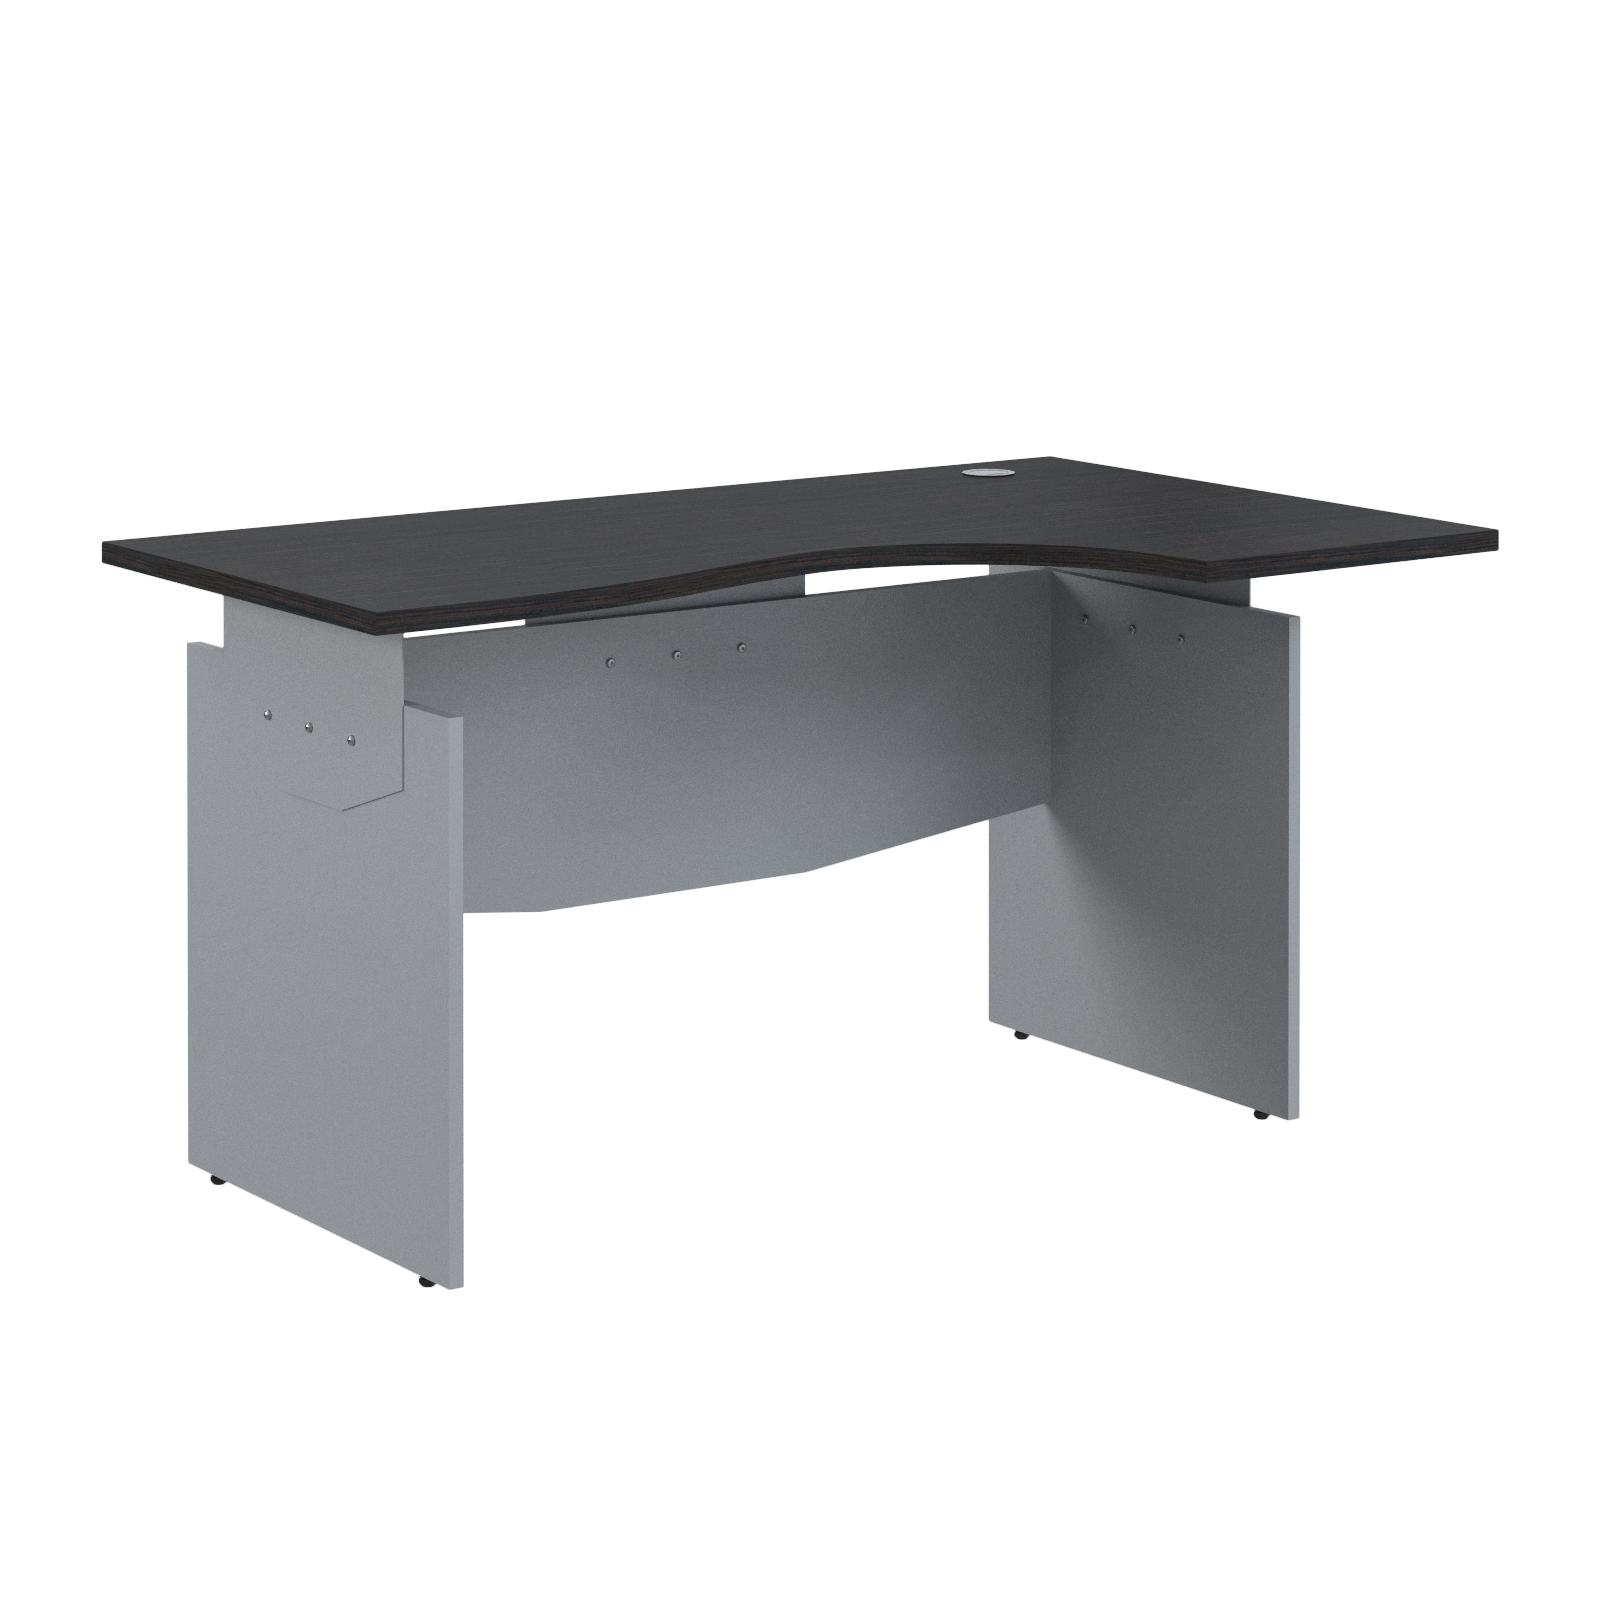 Offix new стол эргономичный 140R